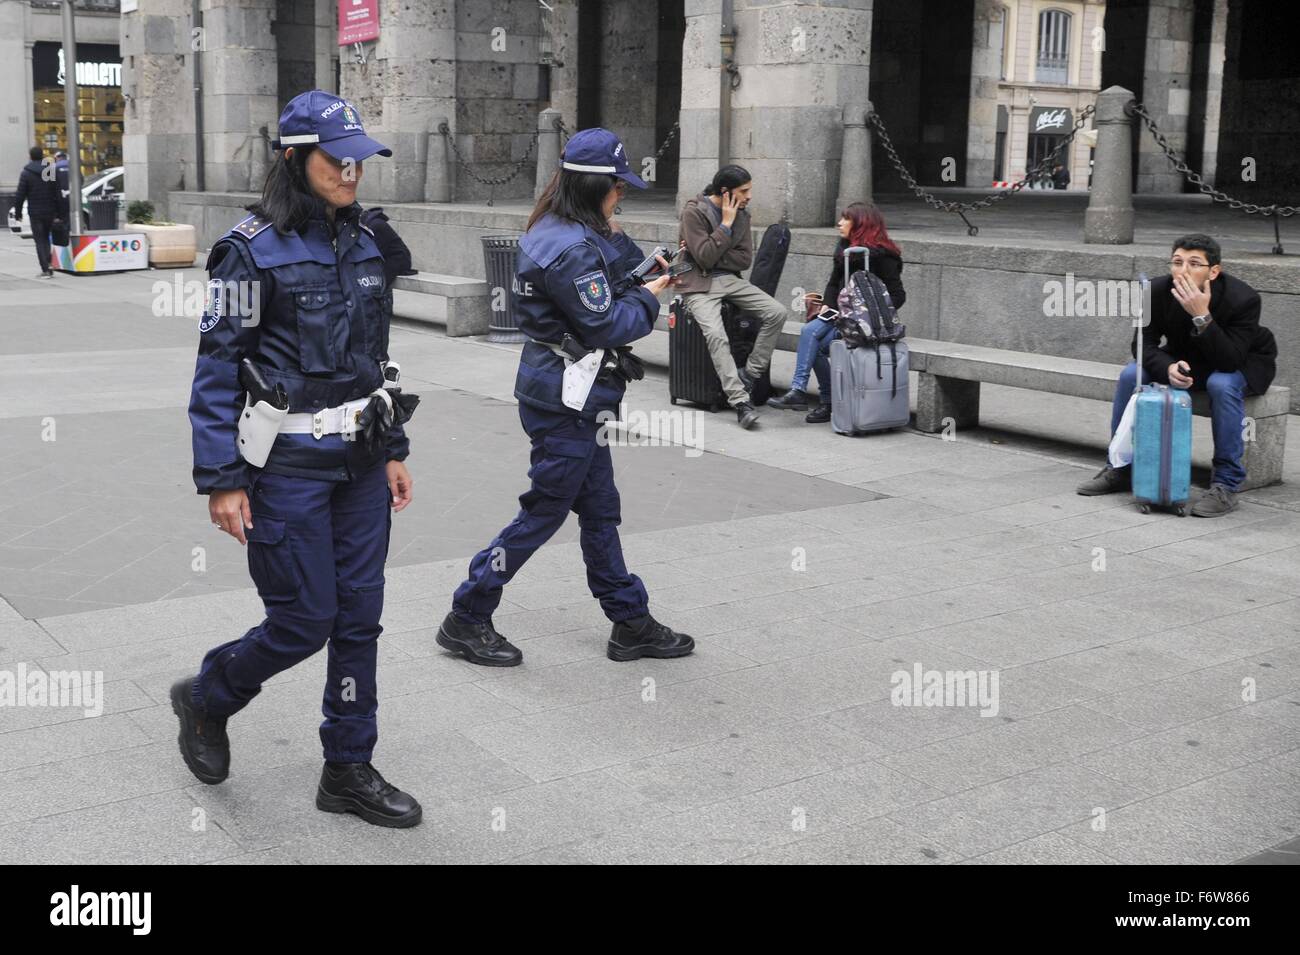 Milan, Italie. 19 novembre, 2015. La police dans la lutte contre le terrorisme service de sécurité au centre-ville Crédit : Dino Fracchia/Alamy Live News Banque D'Images